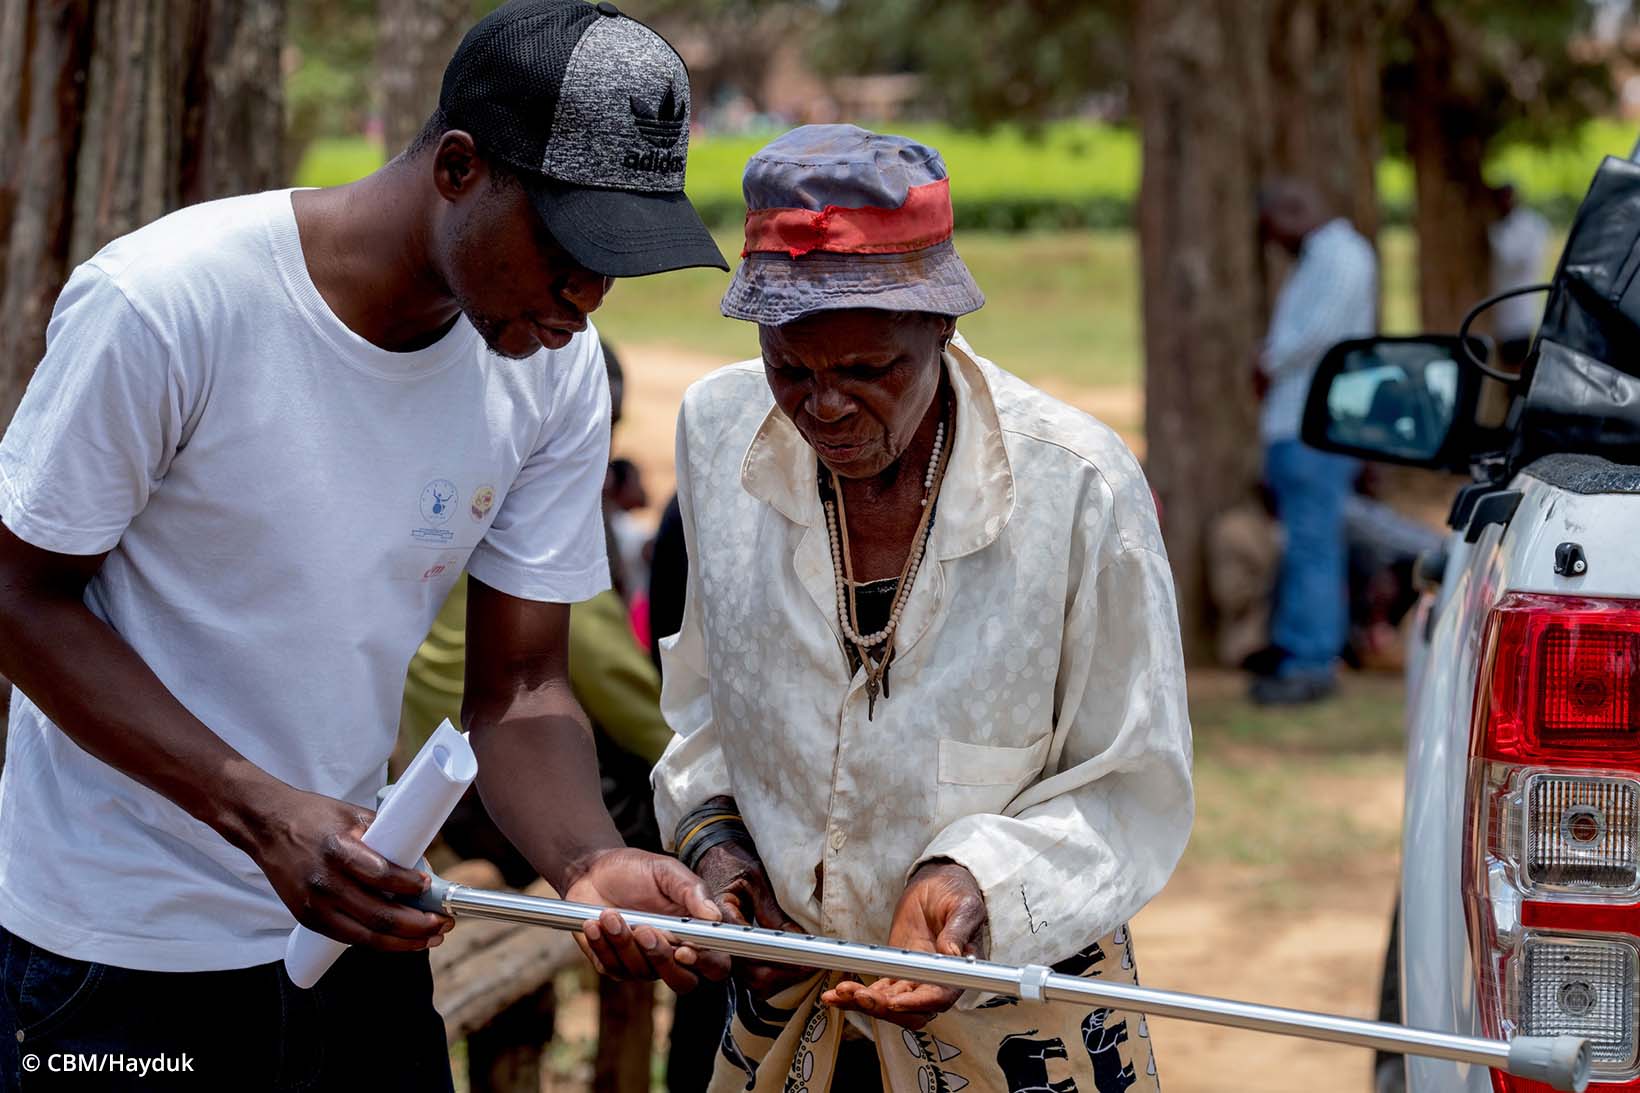 In Zimbabwe, un uomo consegna una stampella a una donna anziana.